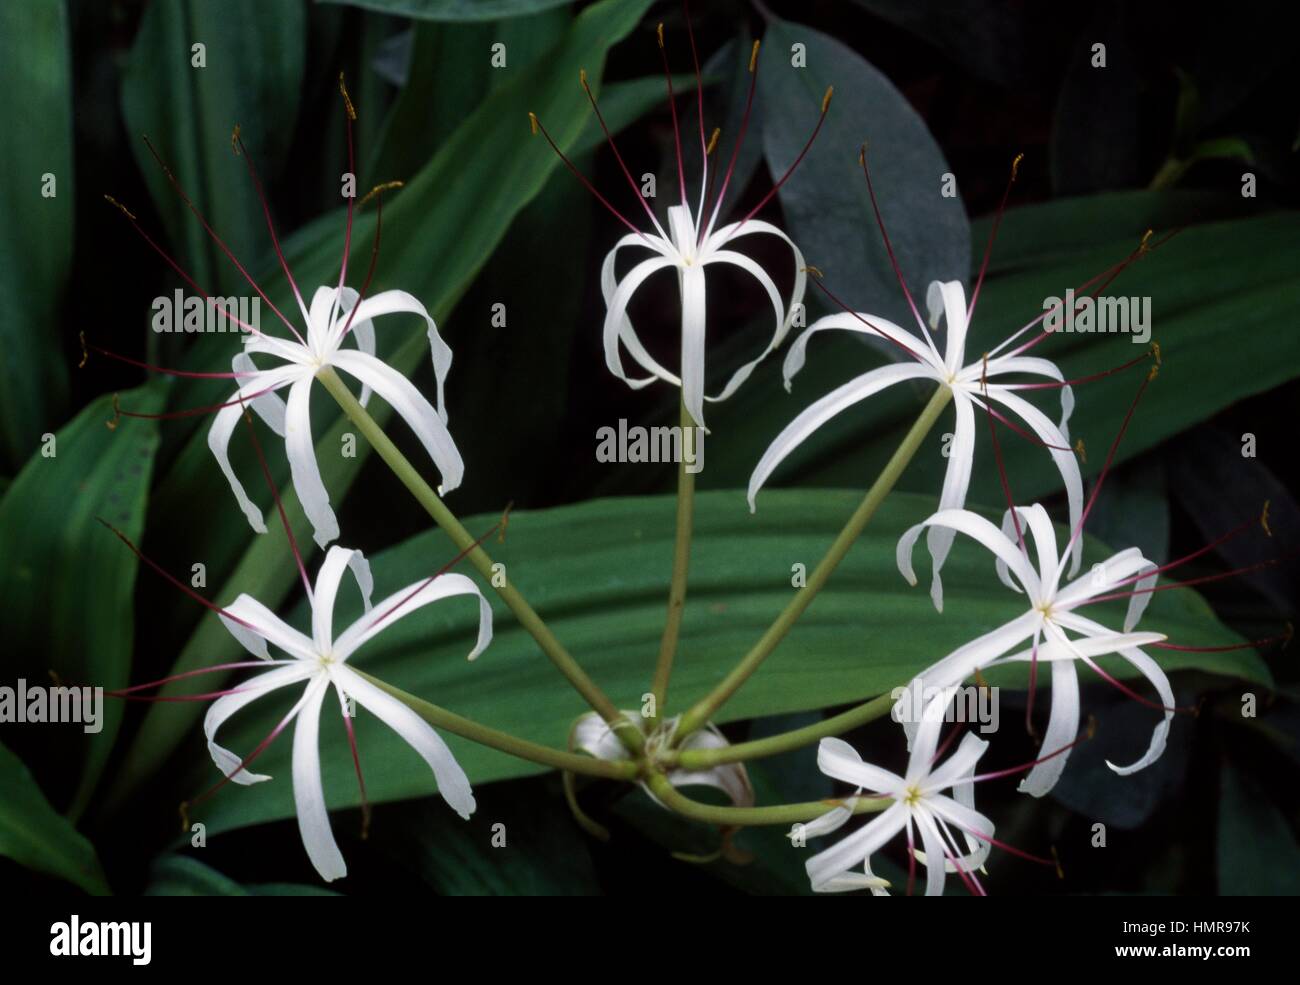 Swamplily (Crinum hildebrandtii), Amaryllidaceae. Stock Photo